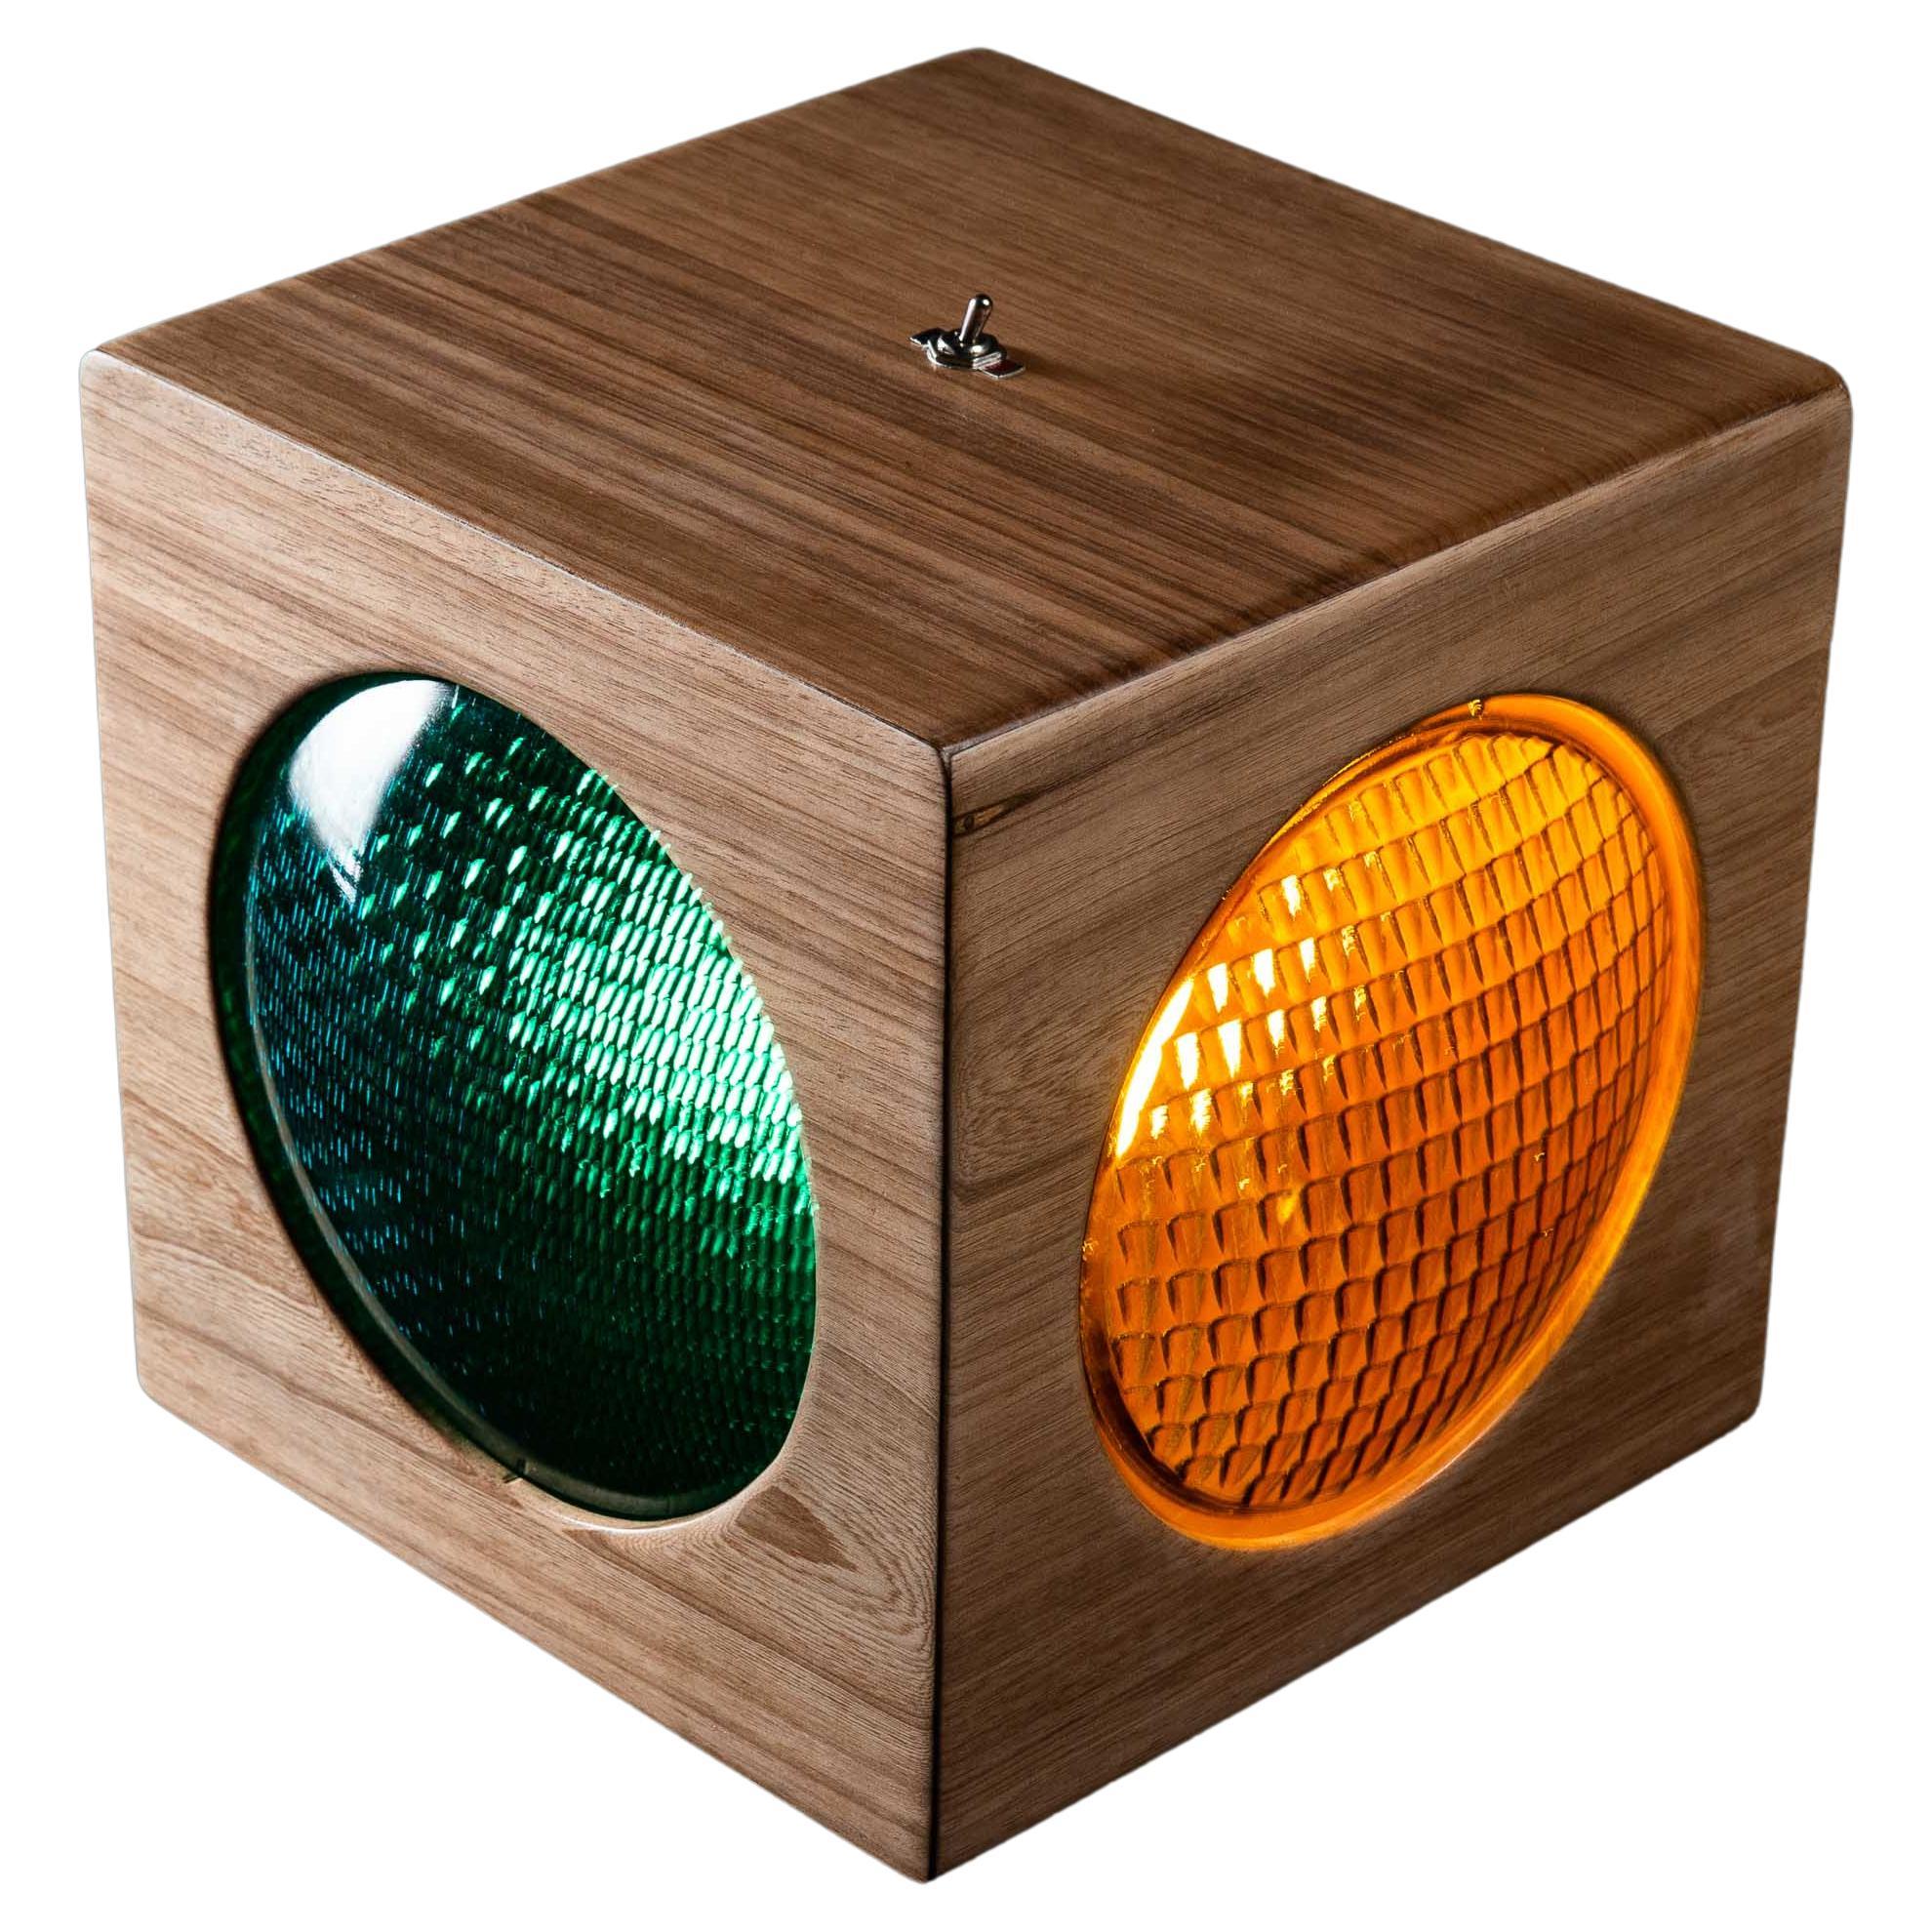 Die Semaphore-Lampe. Linsen für Verkehrssignale aus Massivholz und aus den 1960er Jahren